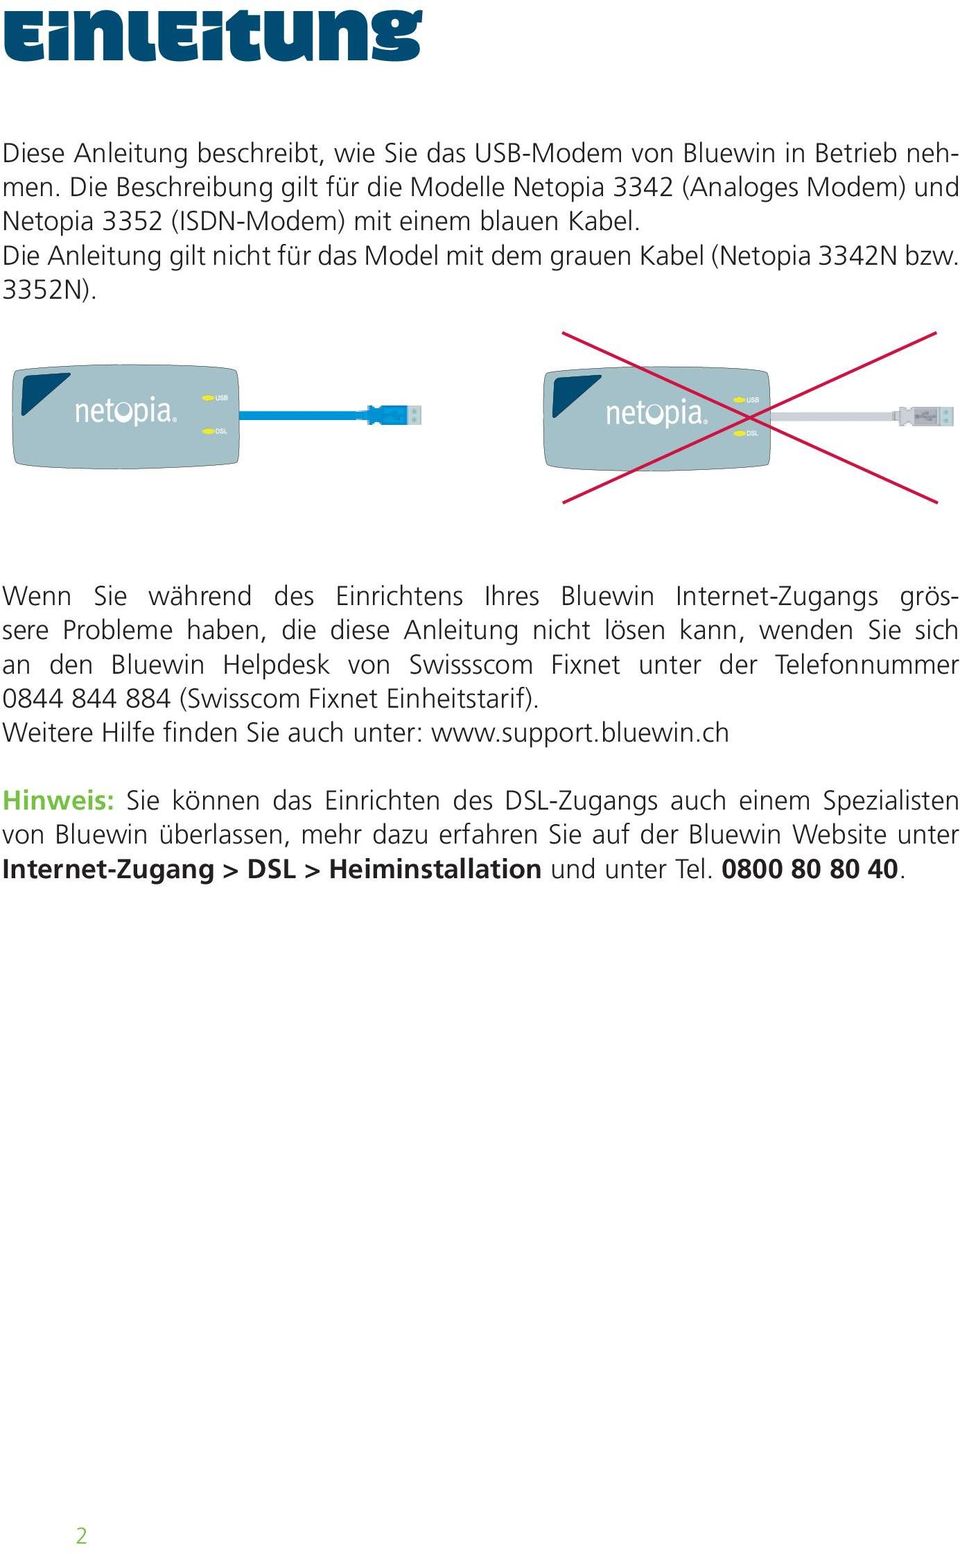 Wenn Sie während des Einrichtens Ihres Bluewin Internet-Zugangs grössere Probleme haben, die diese Anleitung nicht lösen kann, wenden Sie sich an den Bluewin Helpdesk von Swissscom Fixnet unter der